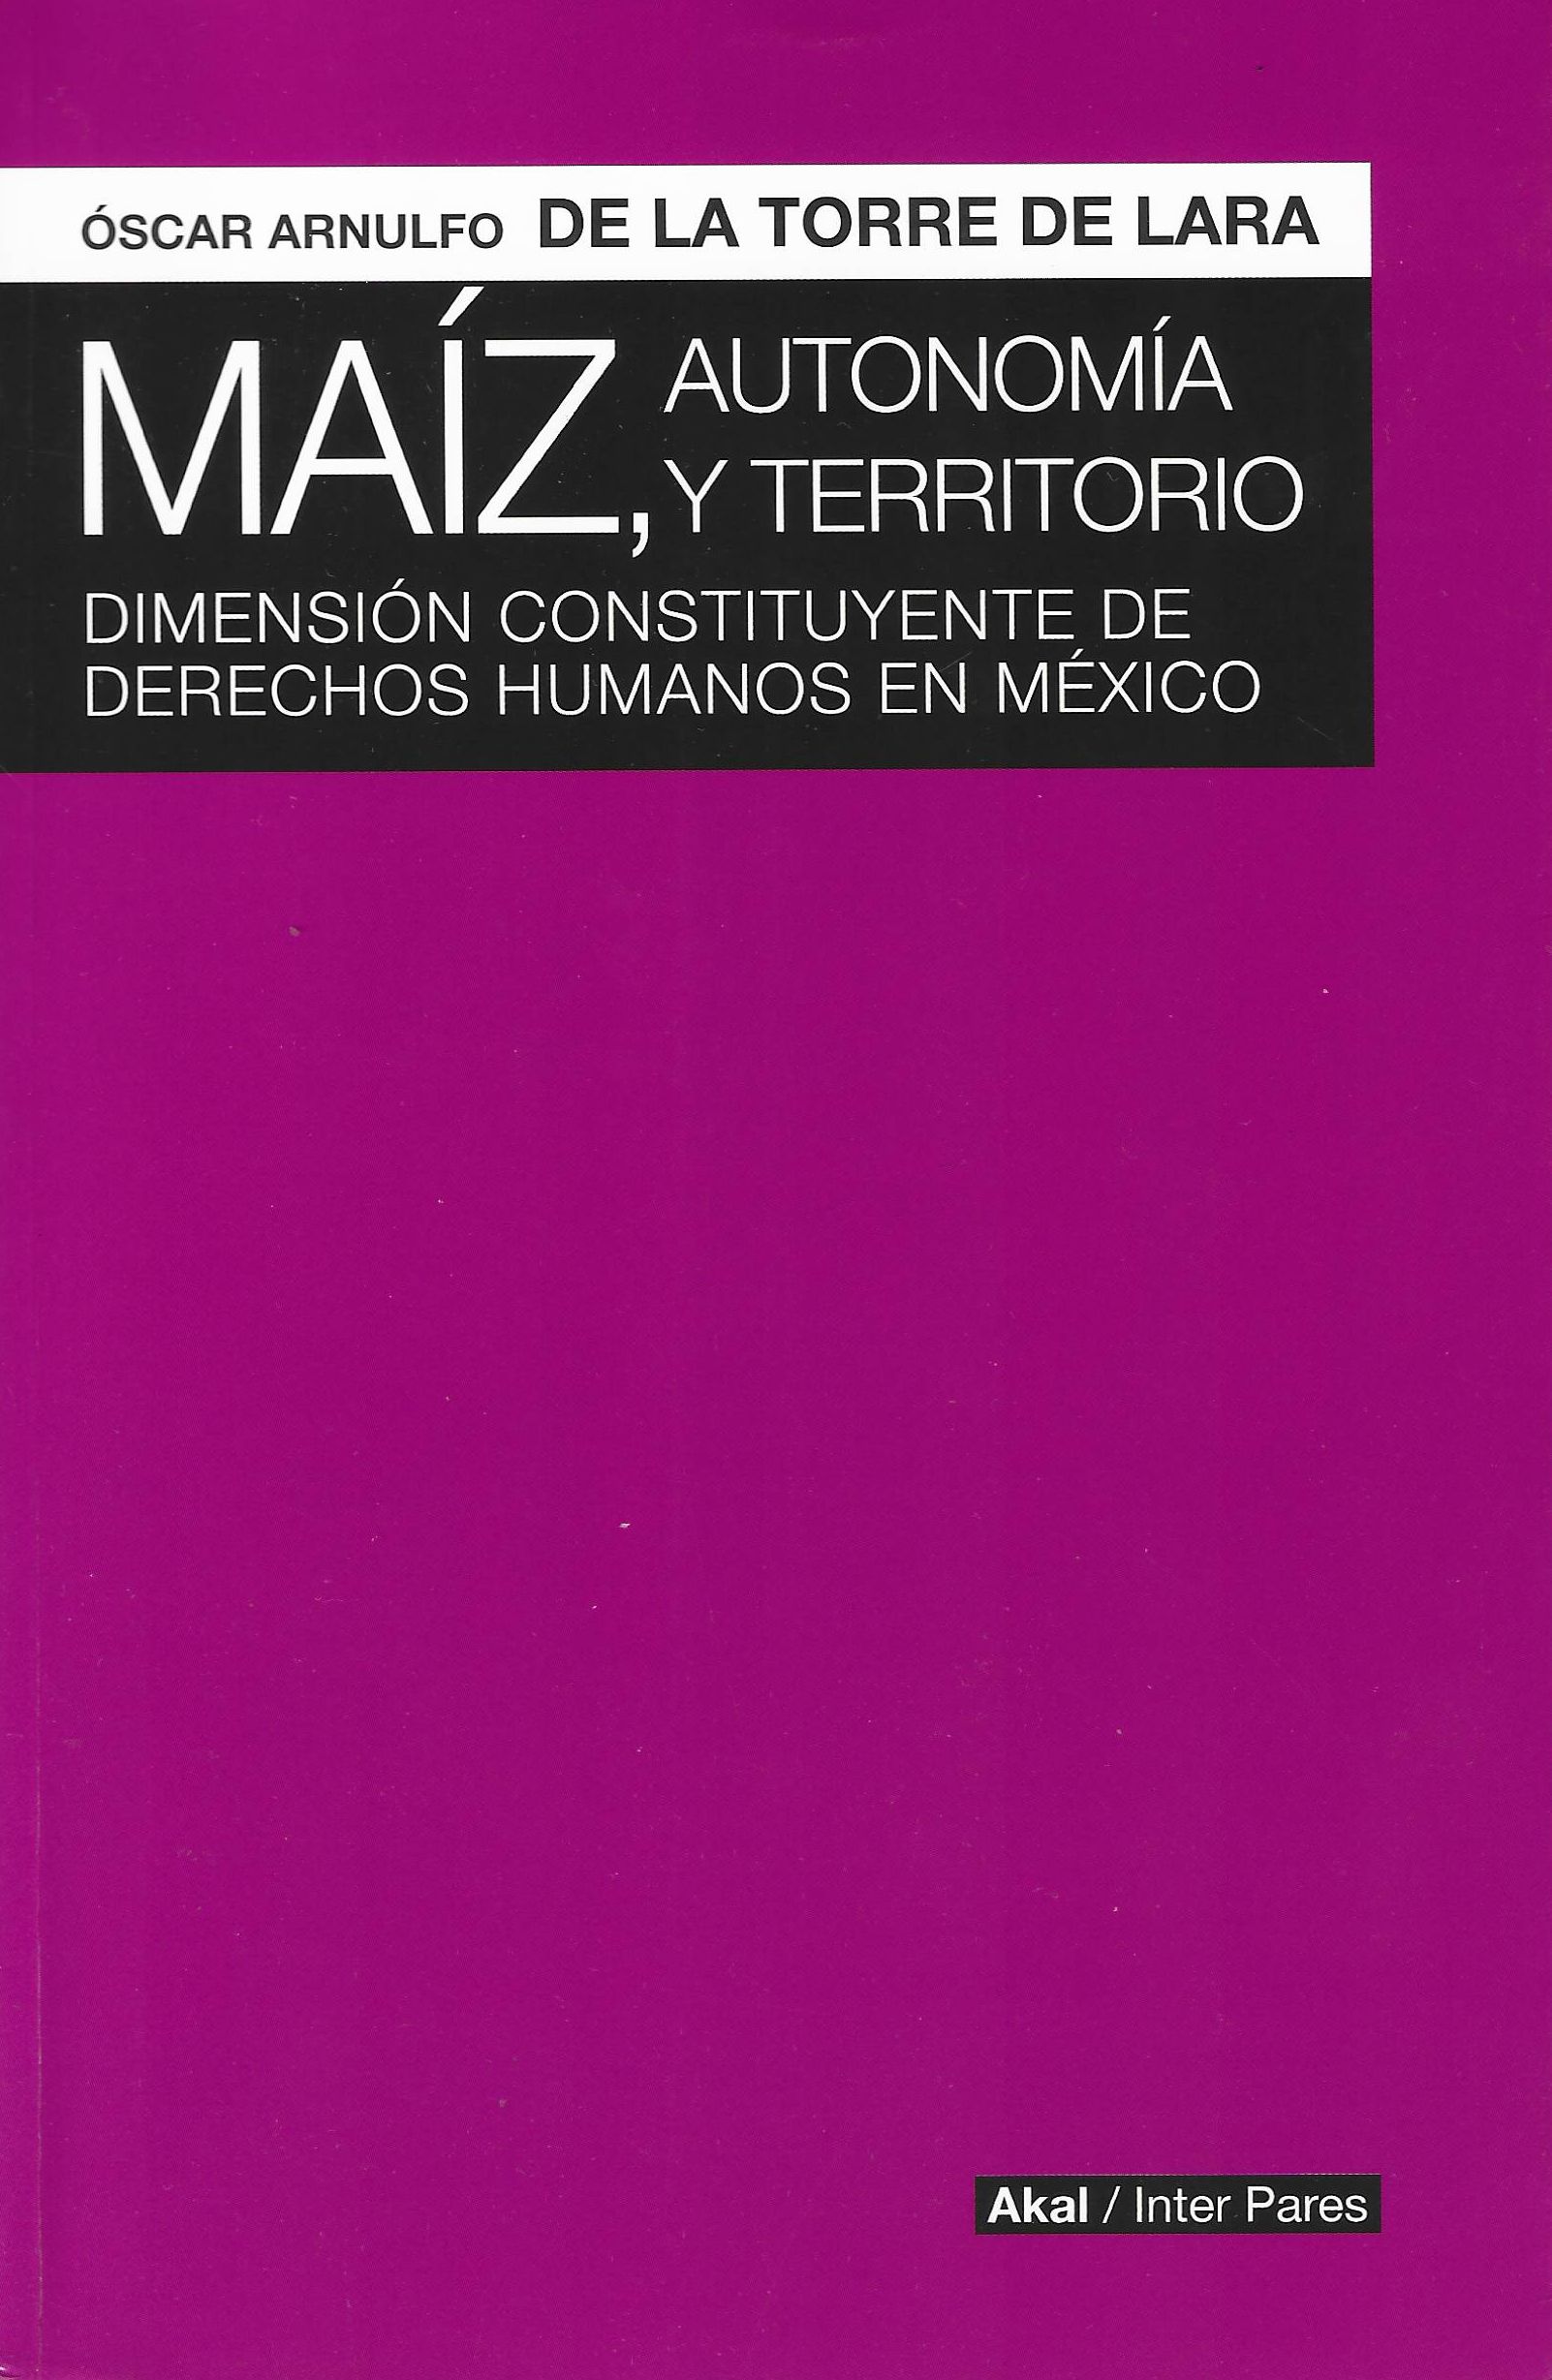 Imagen de portada del libro Maíz, autonomía y territorio